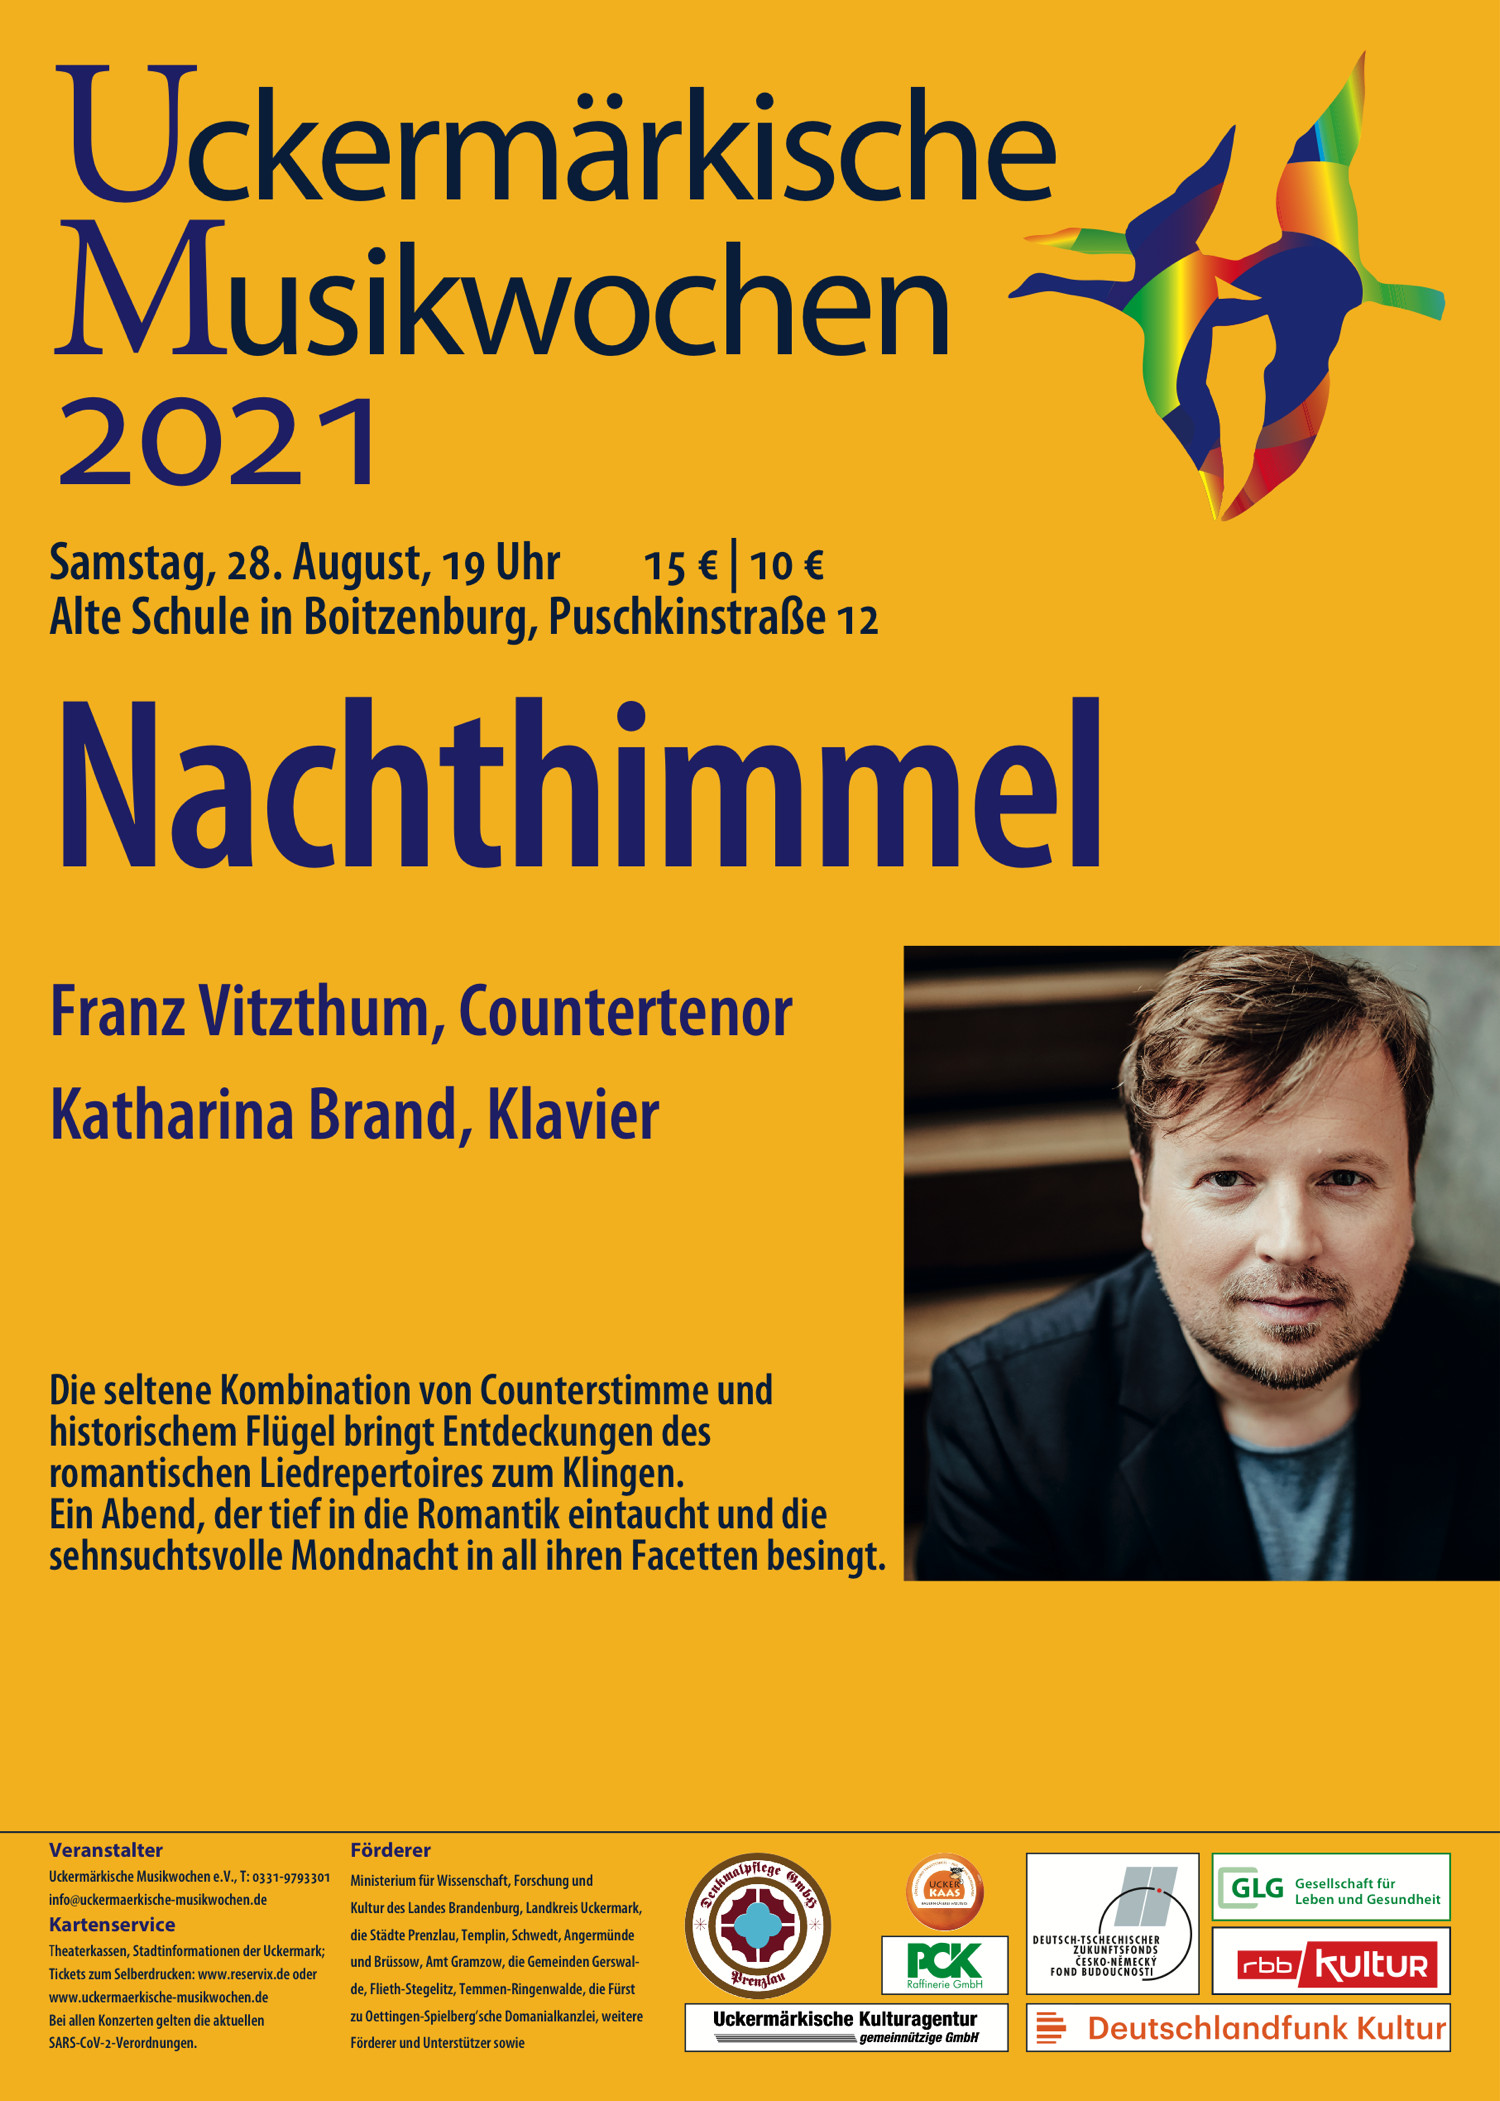 Konzert "Nachthimmel" in der Alten Schule Boitzenburg am 28.08.21 um 19 Uhr